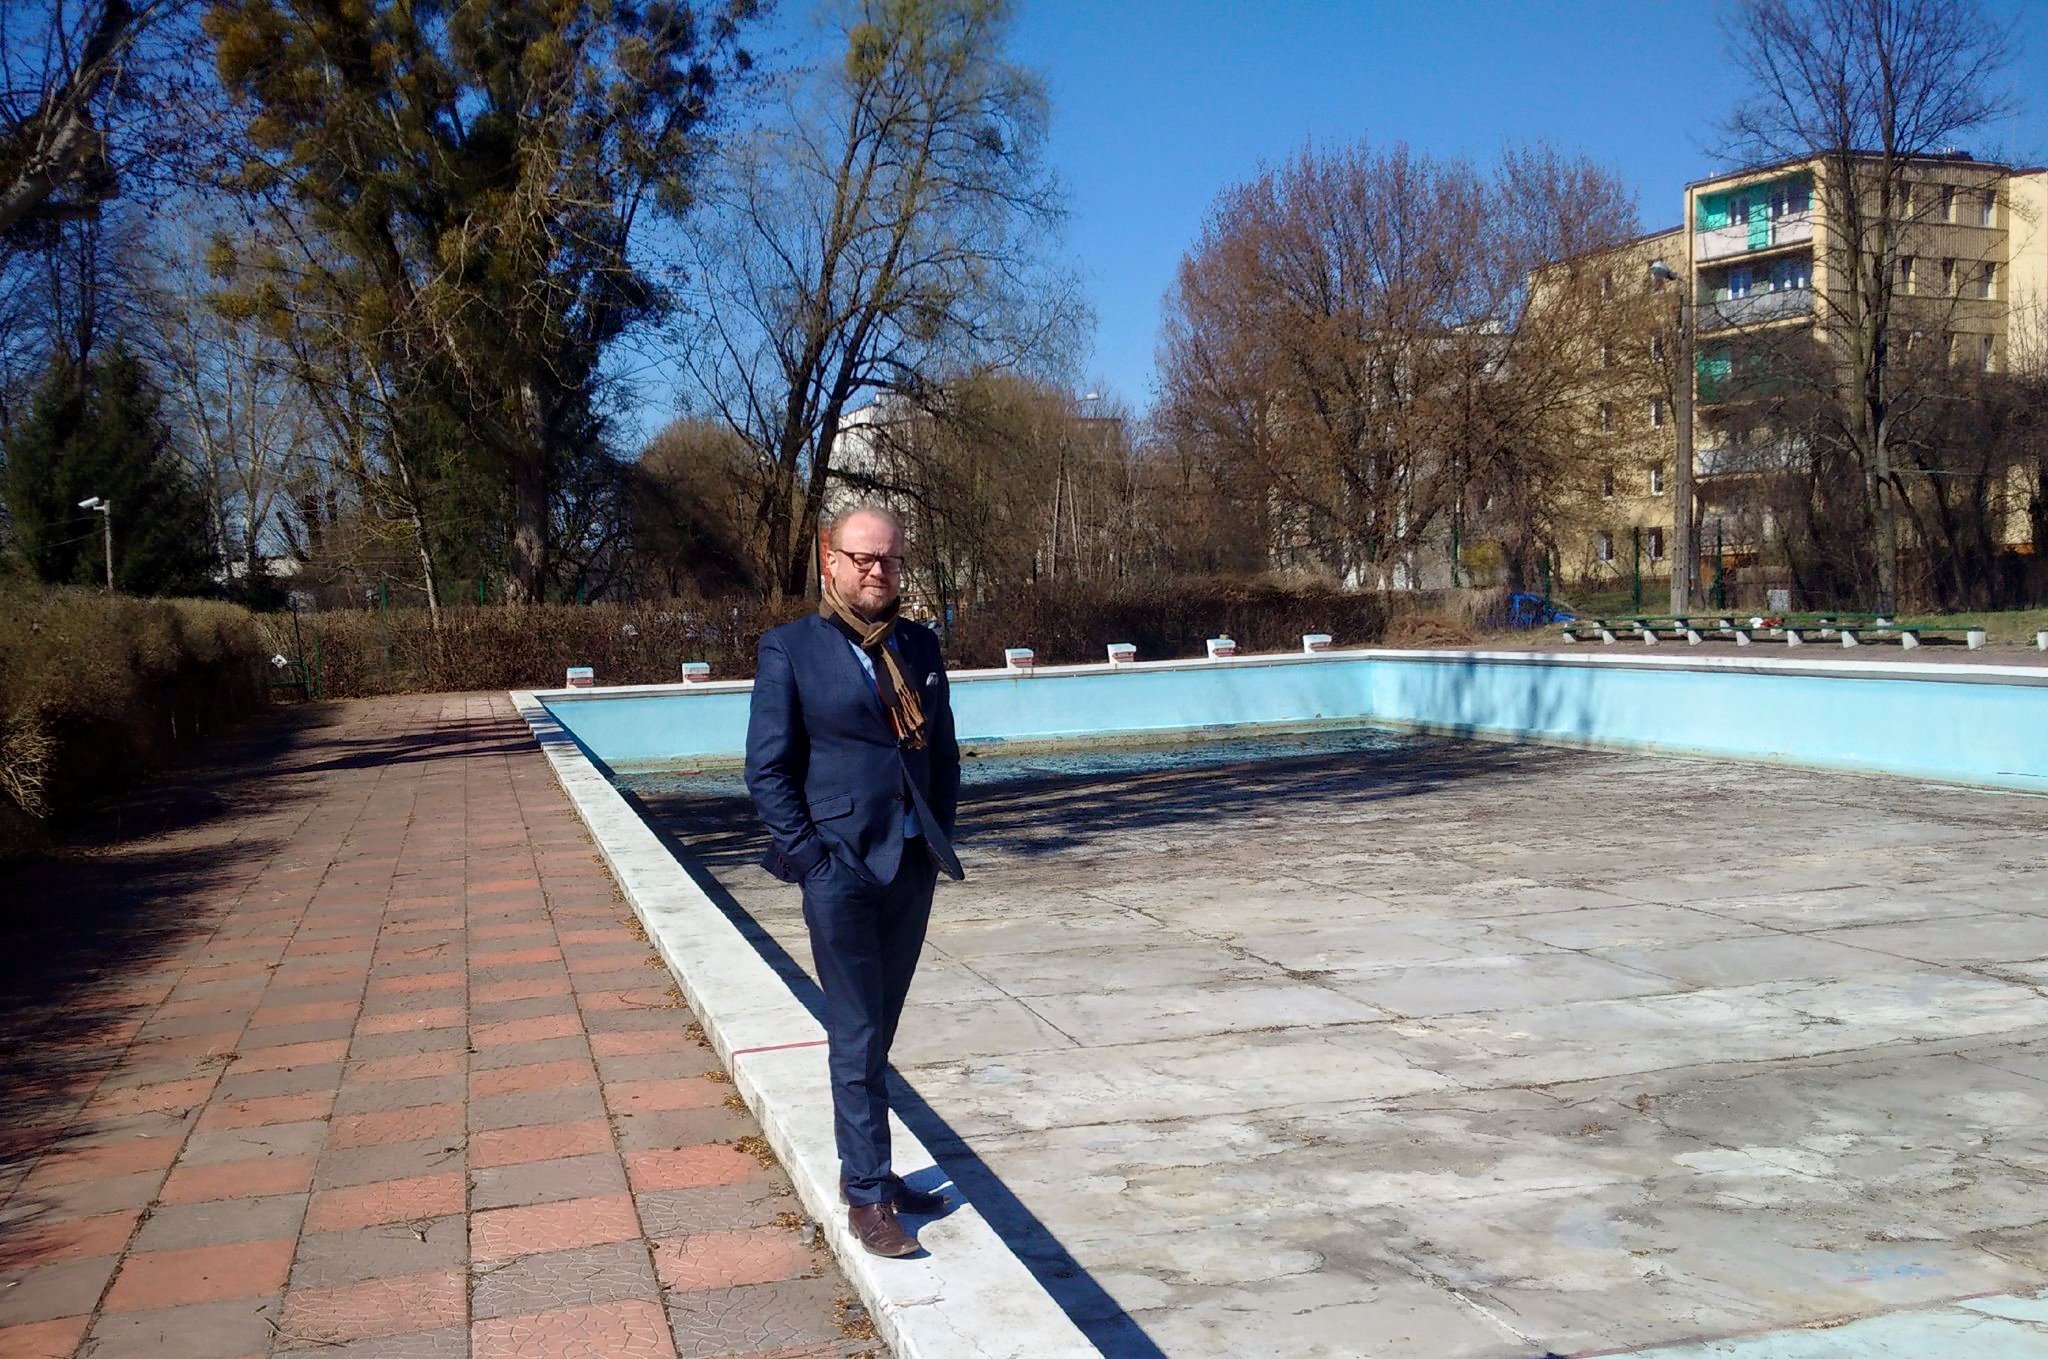 Milanowski basen ożyje na nowo - Grodzisk News